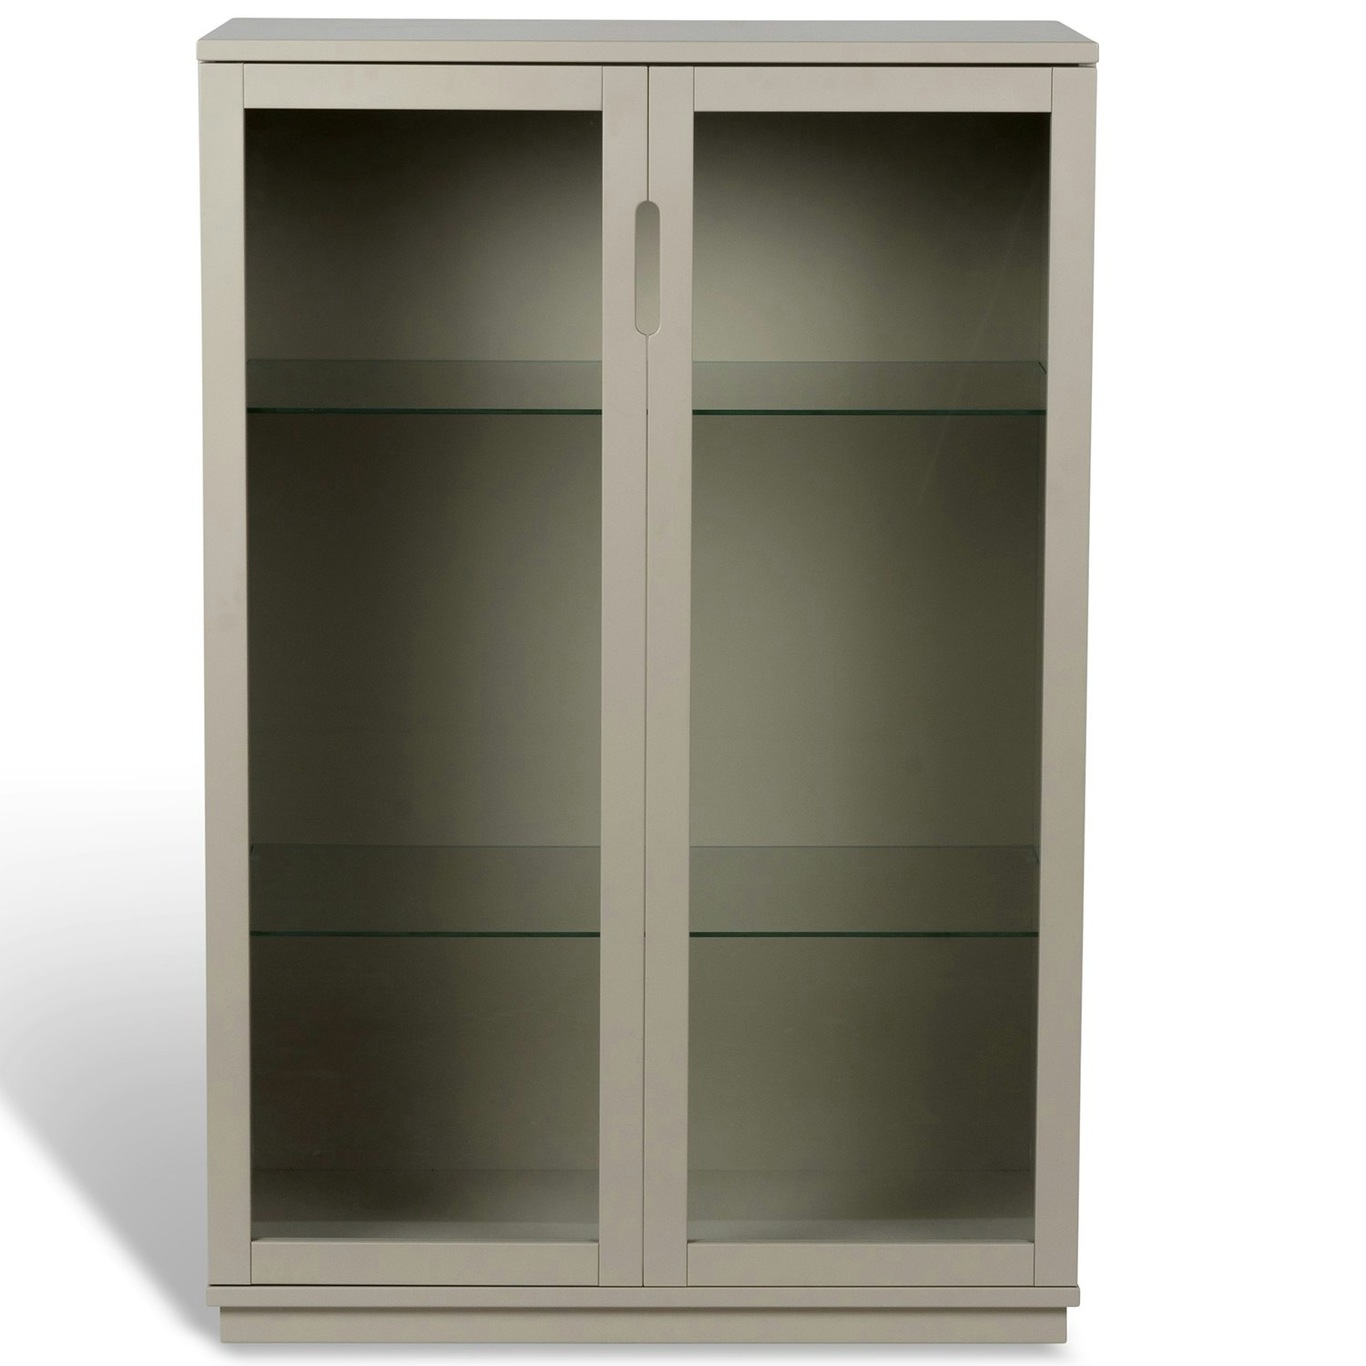 Aoko Cabinet With Glass Doors, Beige